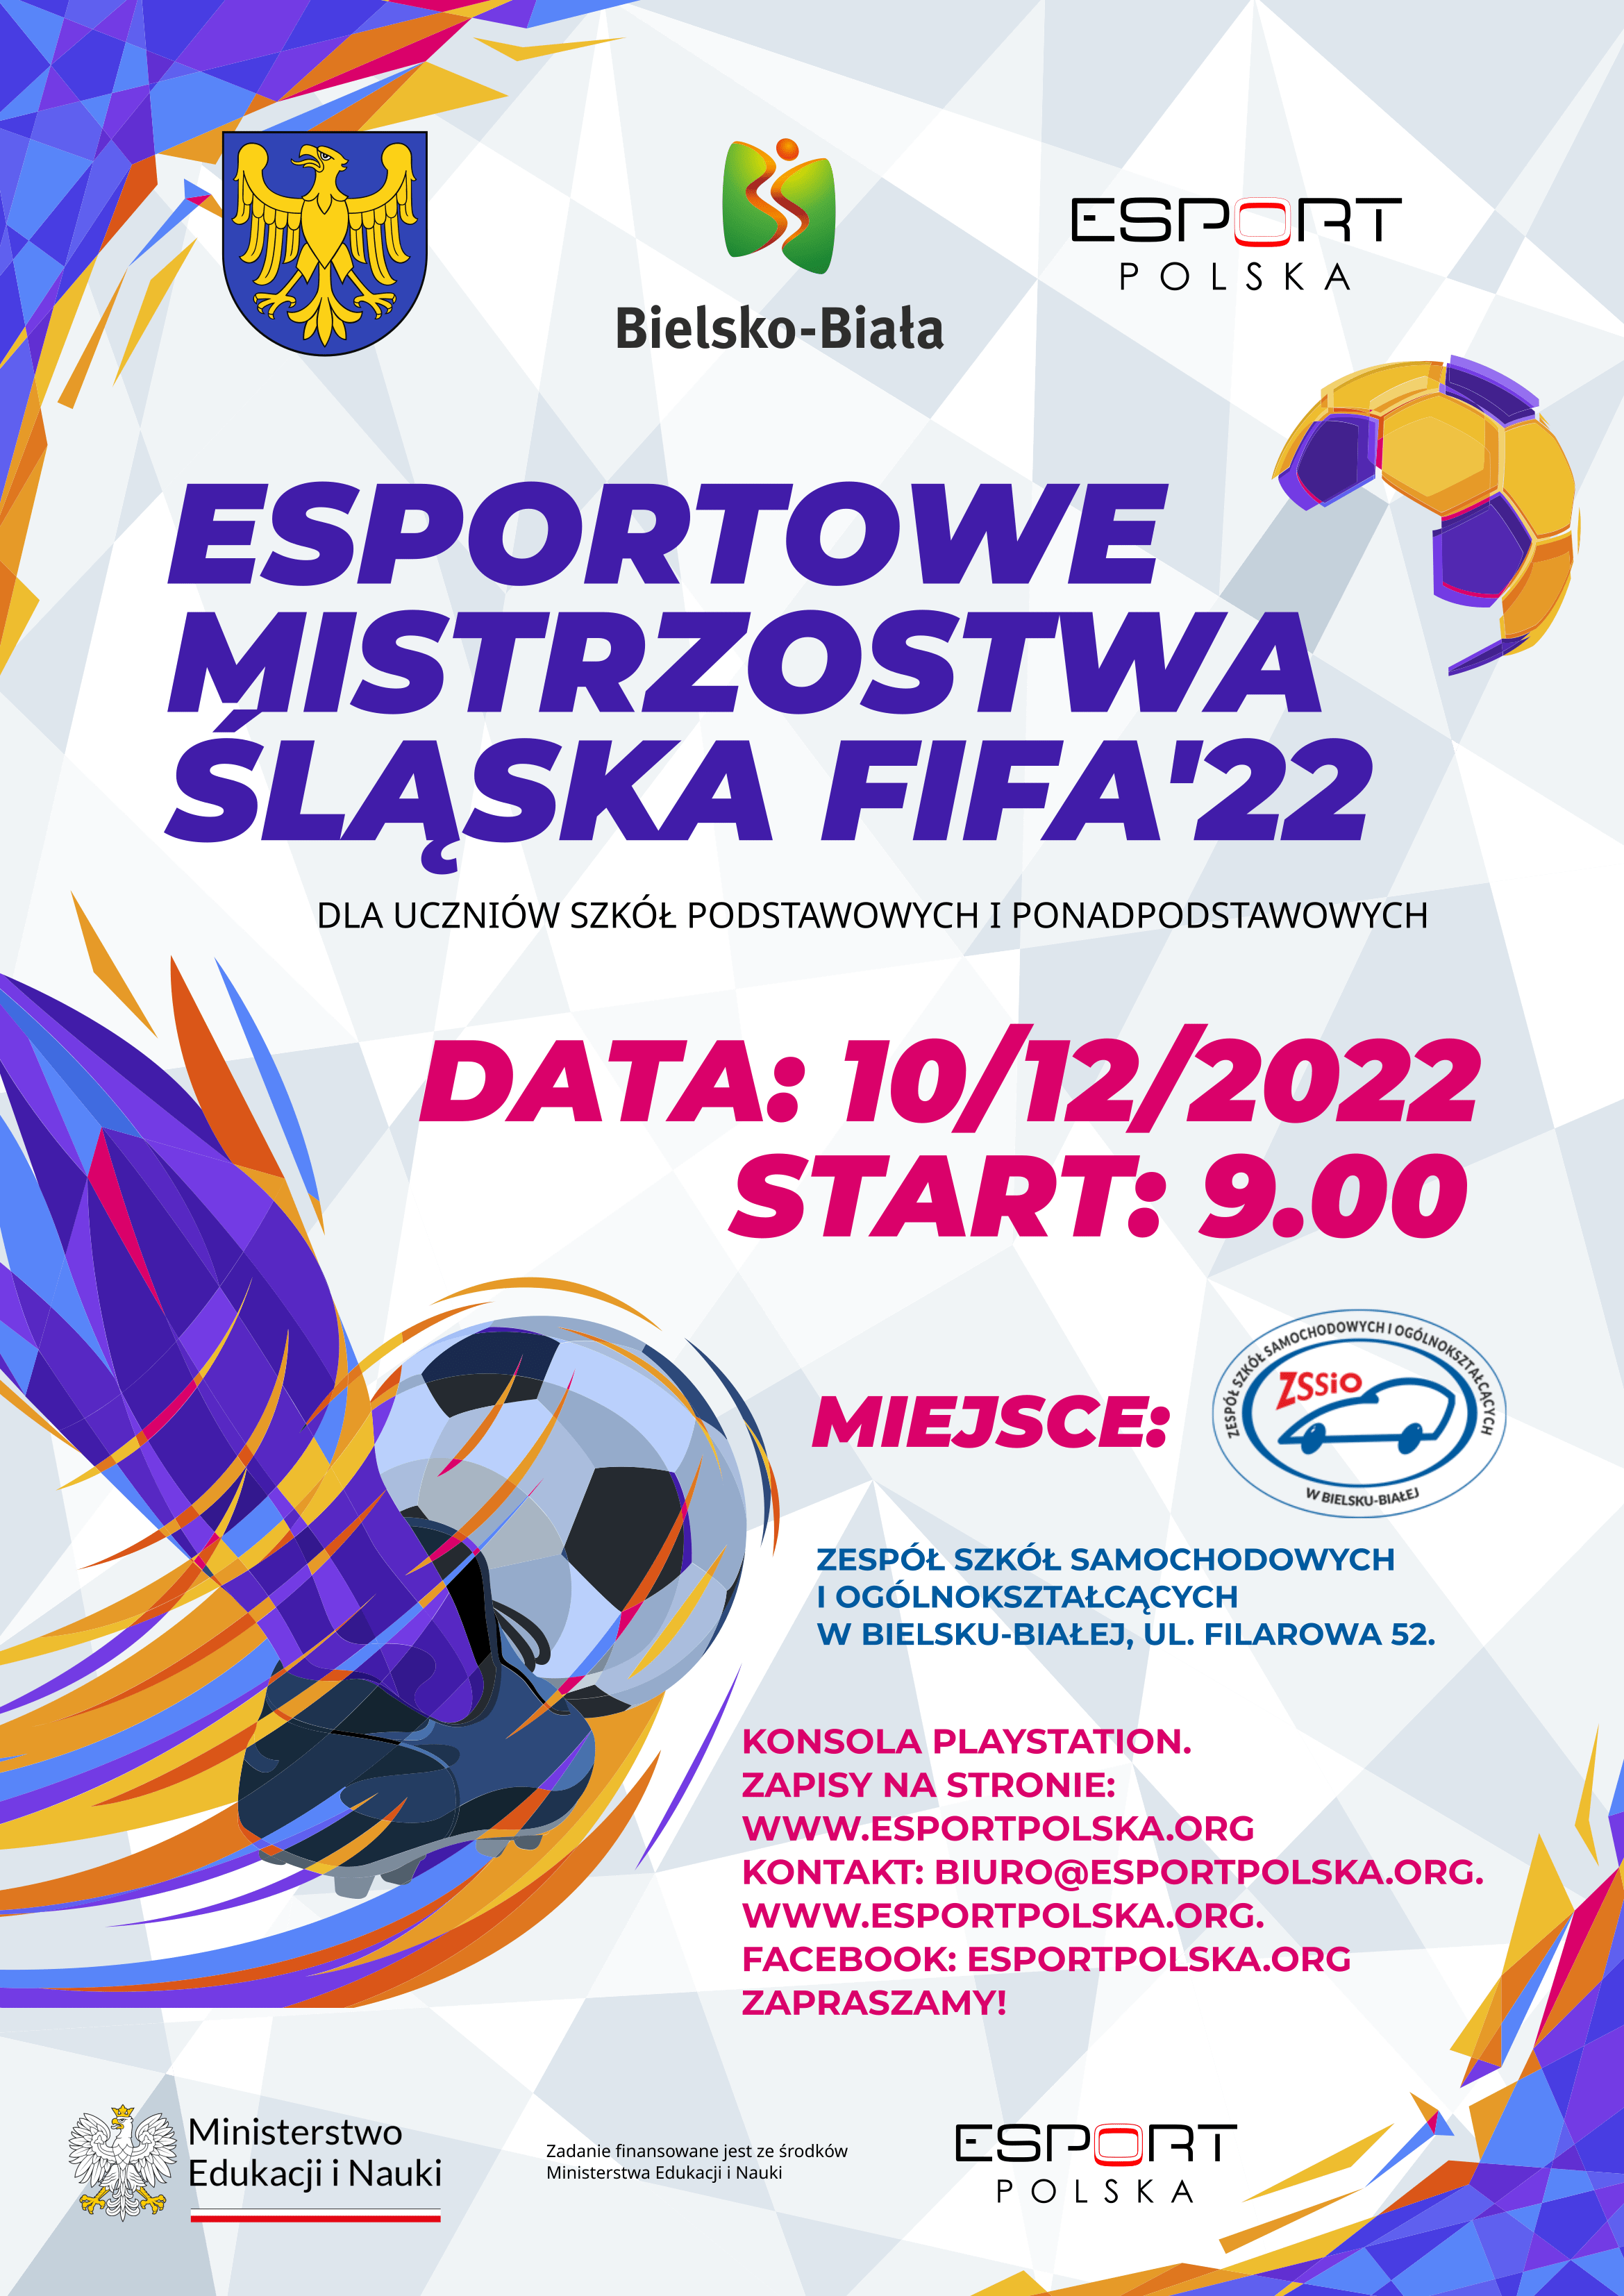 Esportowe Mistrzostwa Śląska FIFA’22 – 10/12/2022